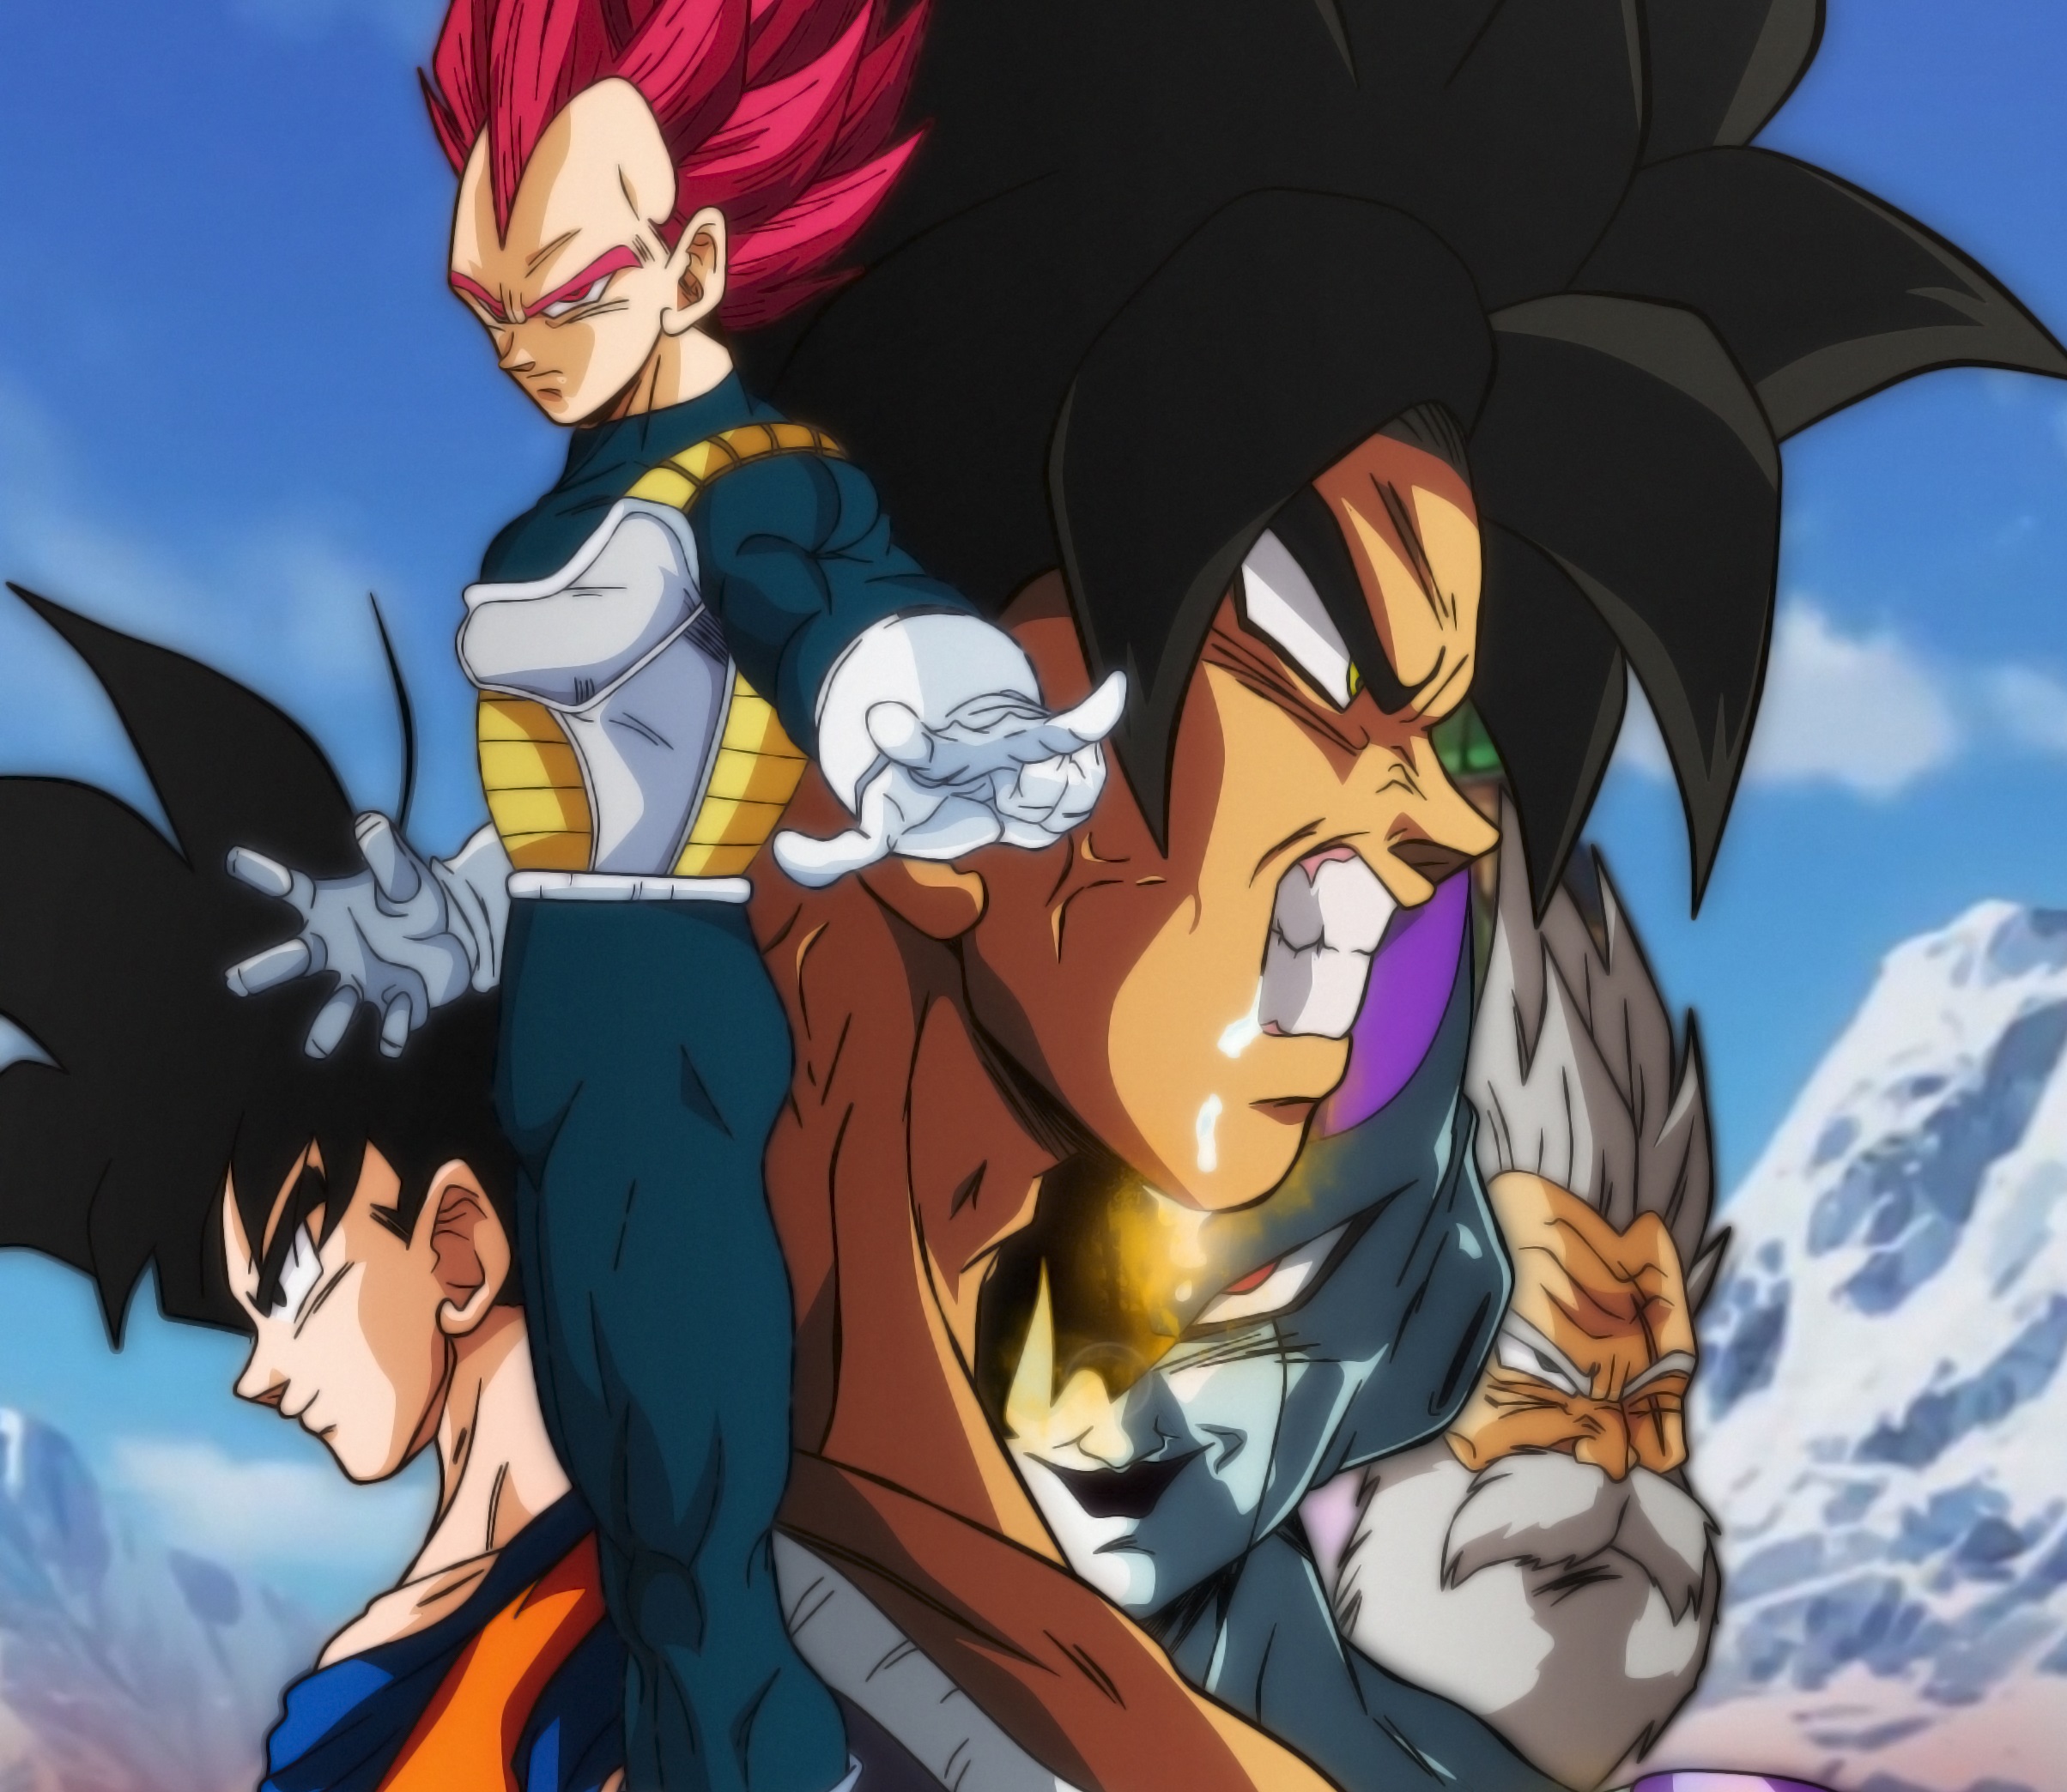 Download mobile wallpaper Anime, Goku, Vegeta (Dragon Ball), Broly (Dragon Ball), Super Saiyan God, Dragon Ball Super: Broly for free.